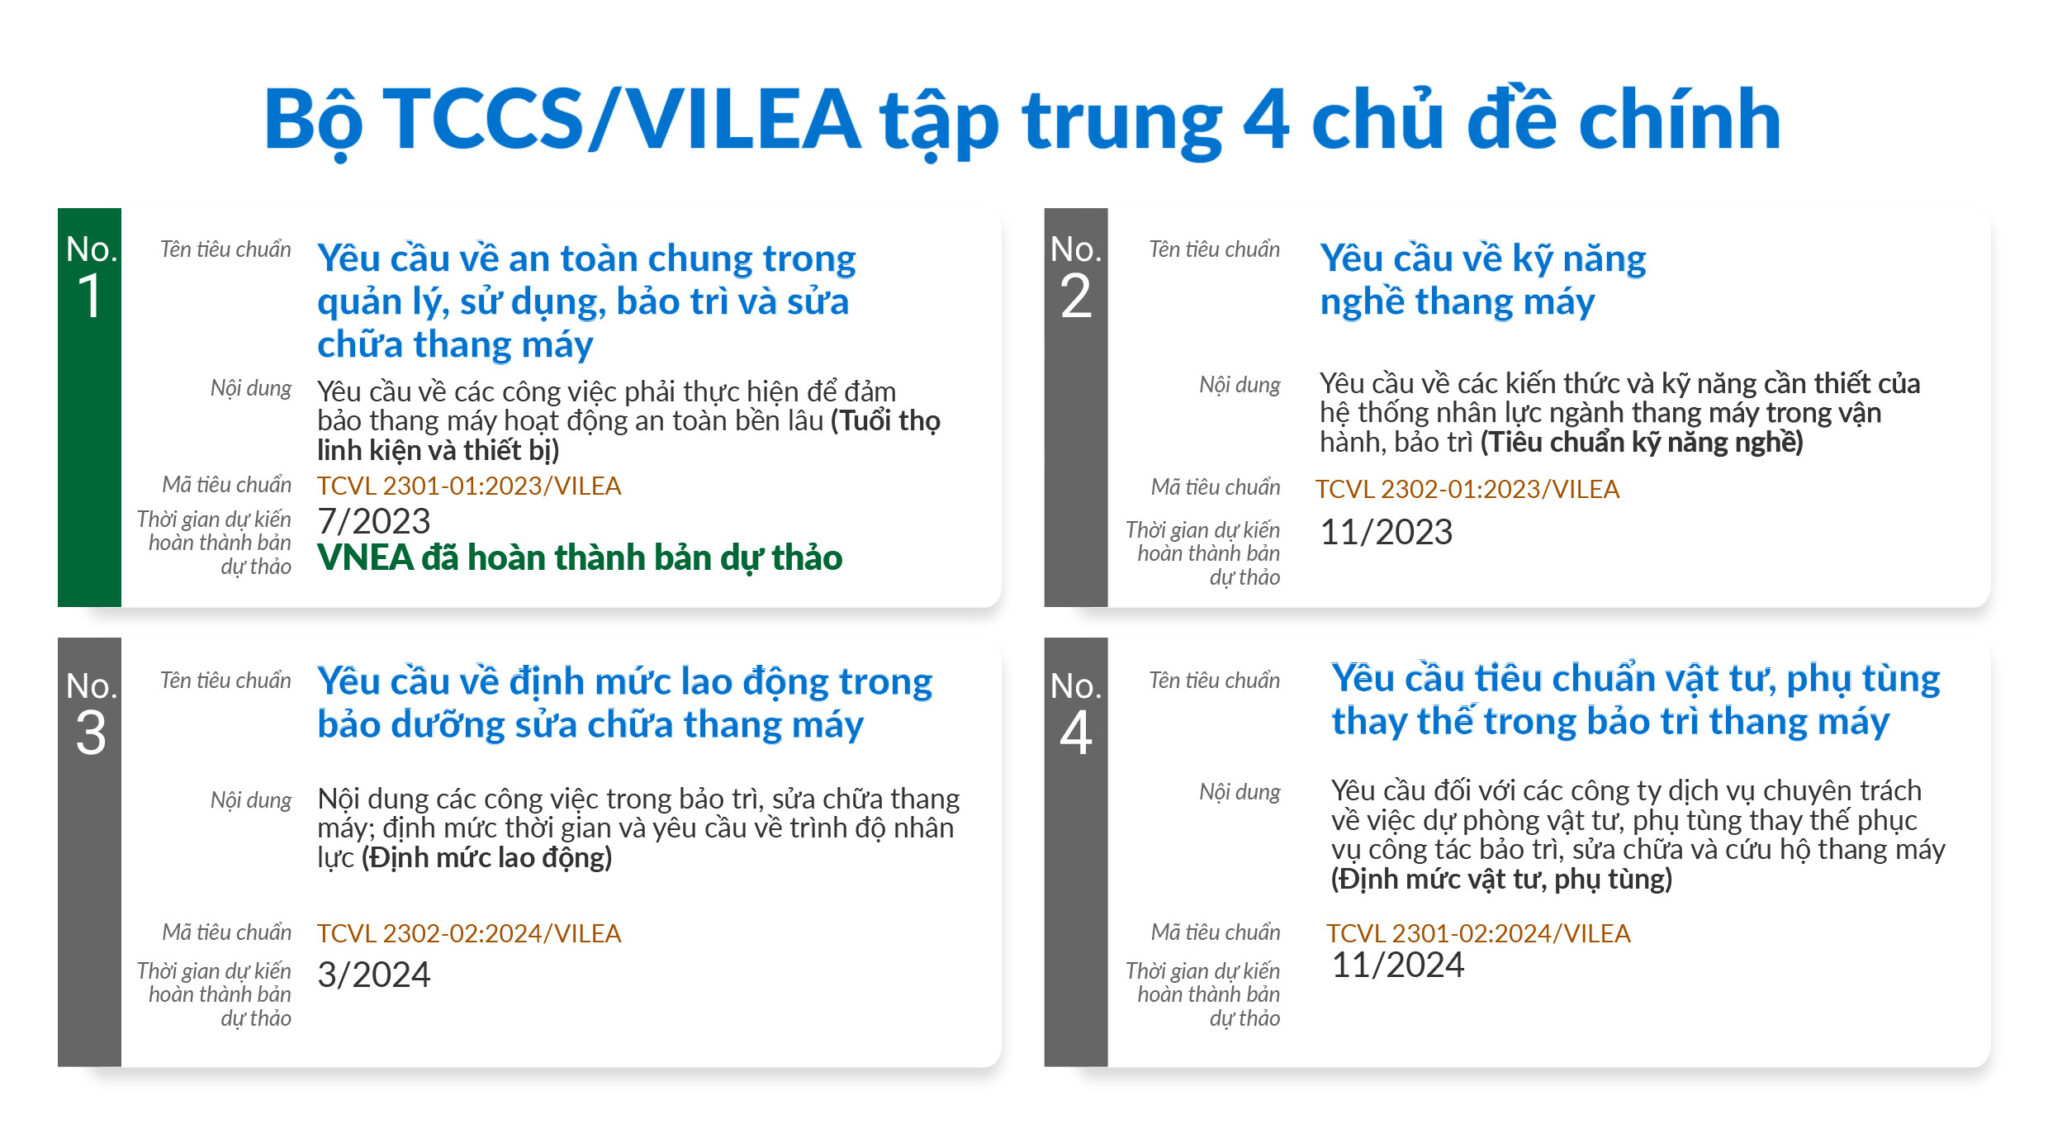 4 chủ đề chính nằm trong bộ TCCS VILEA